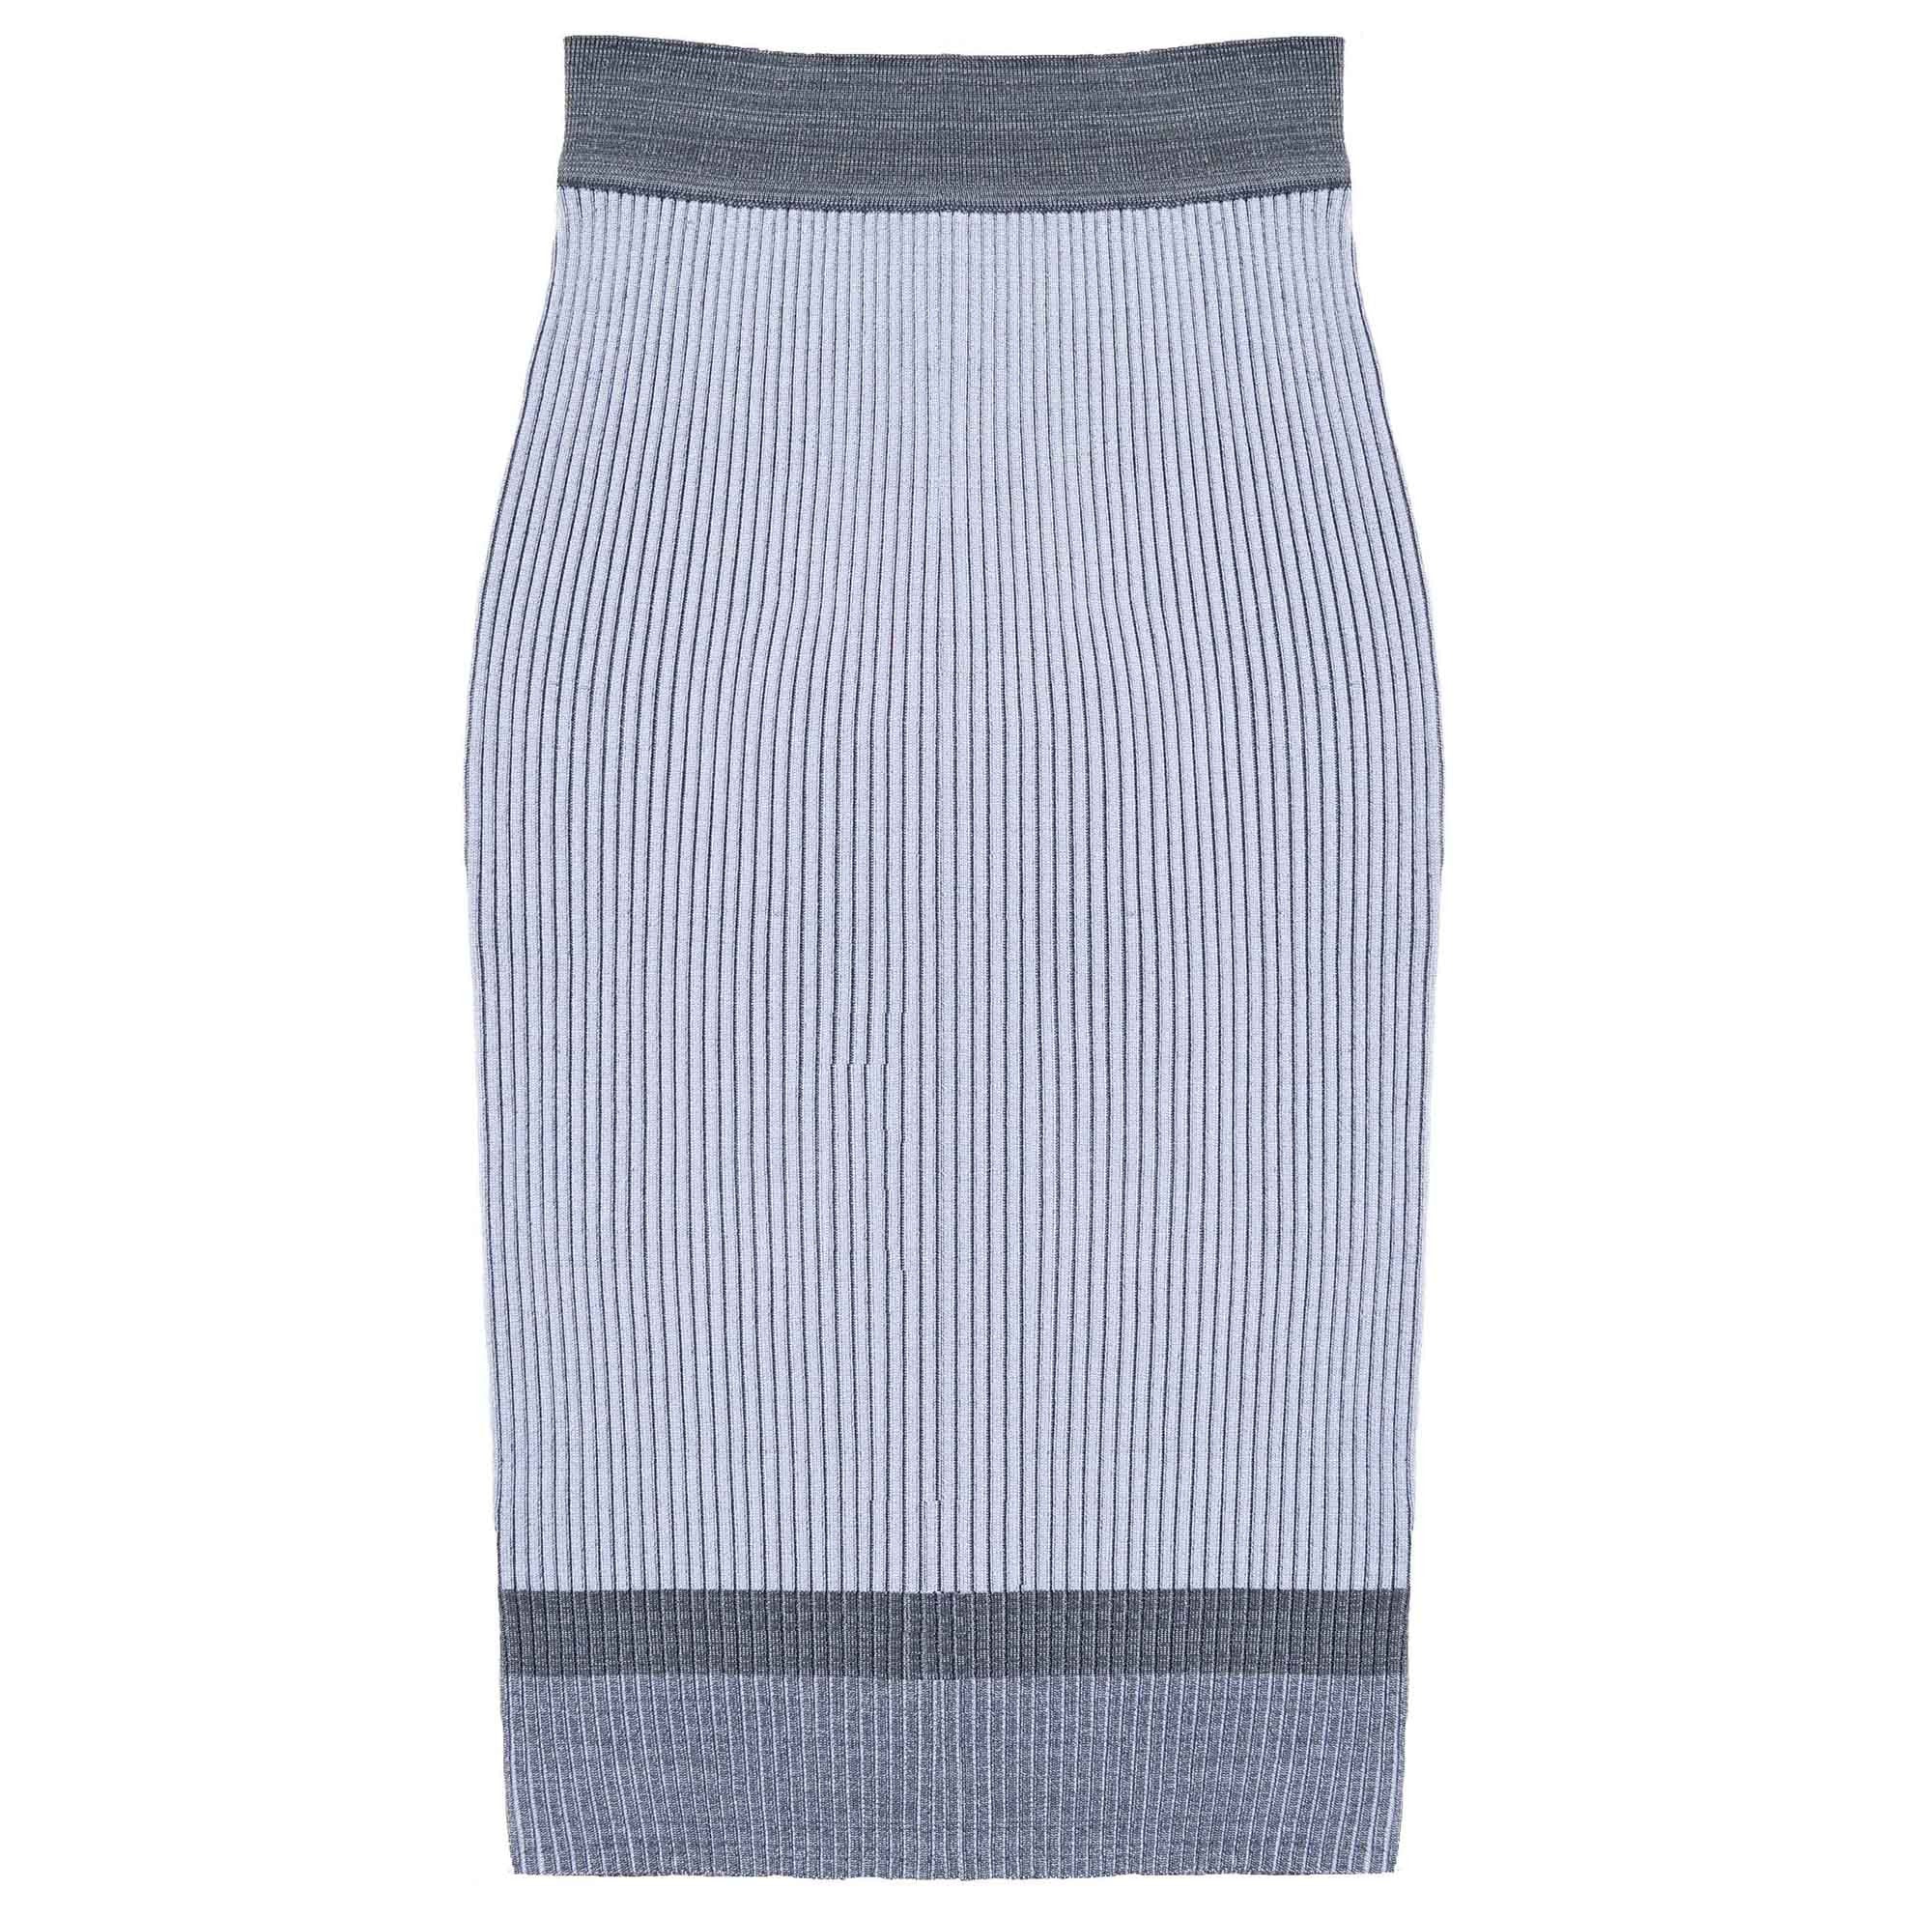 DUA skirt in grey